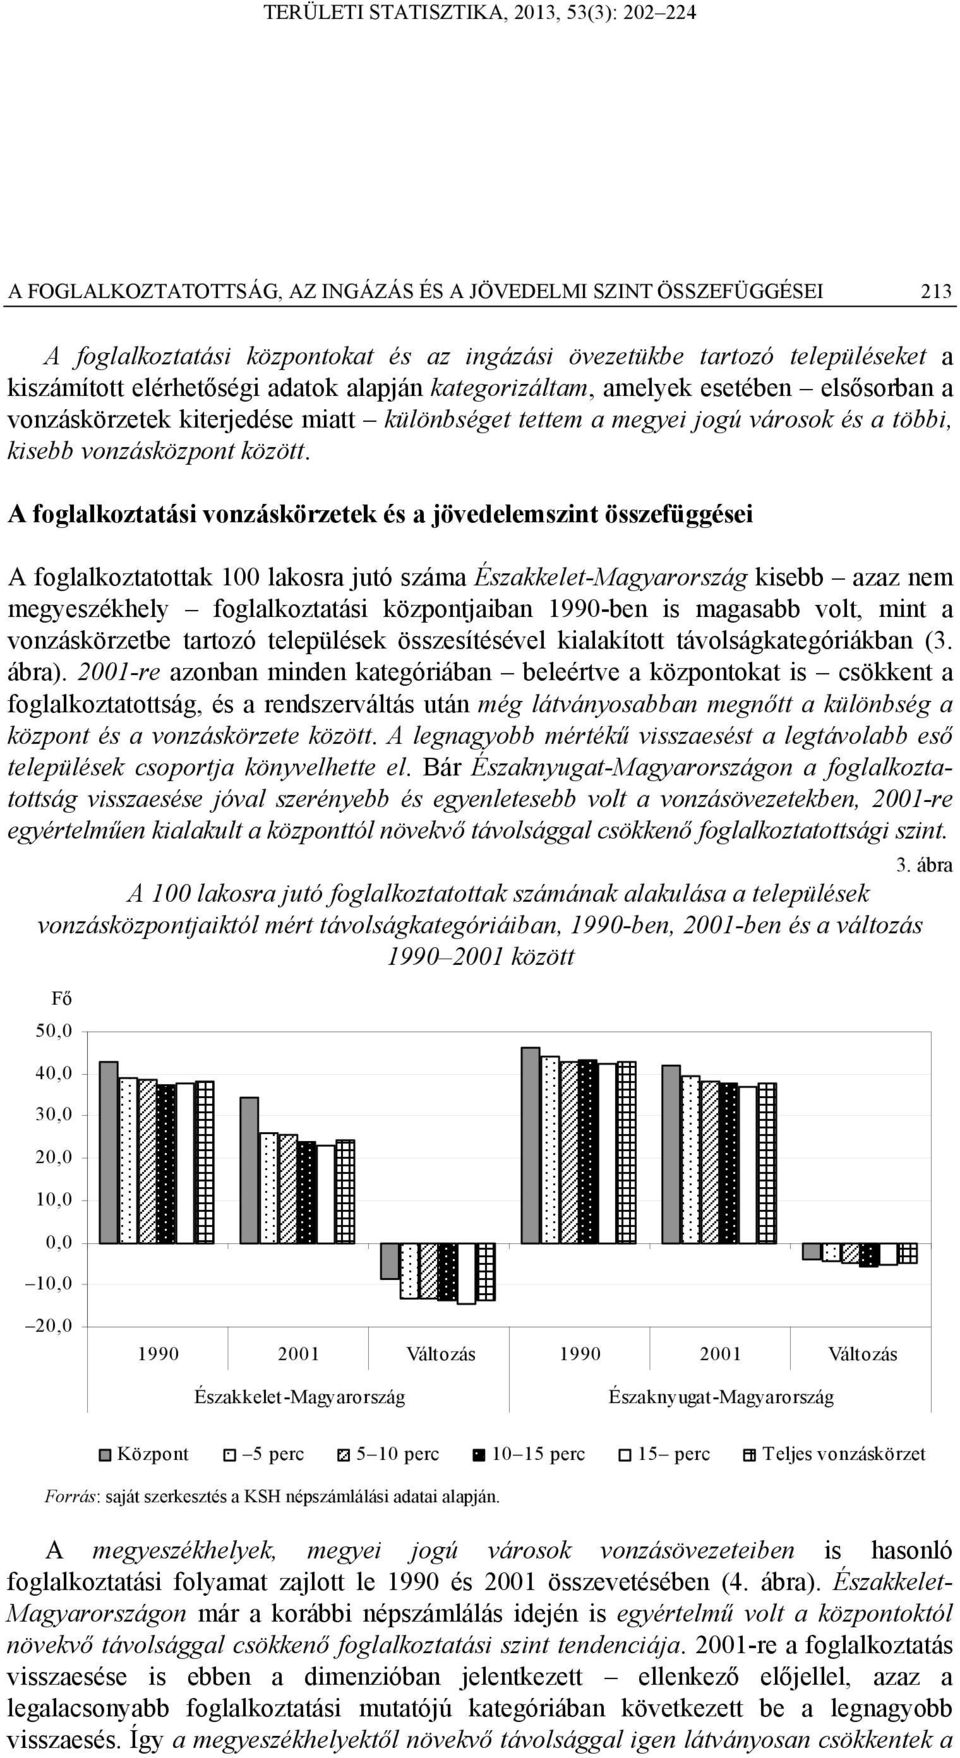 A foglalkoztatási vonzáskörzetek és a jövedelemszint összefüggései A foglalkoztatottak 100 lakosra jutó száma Északkelet-Magyarország kisebb azaz nem megyeszékhely foglalkoztatási központjaiban